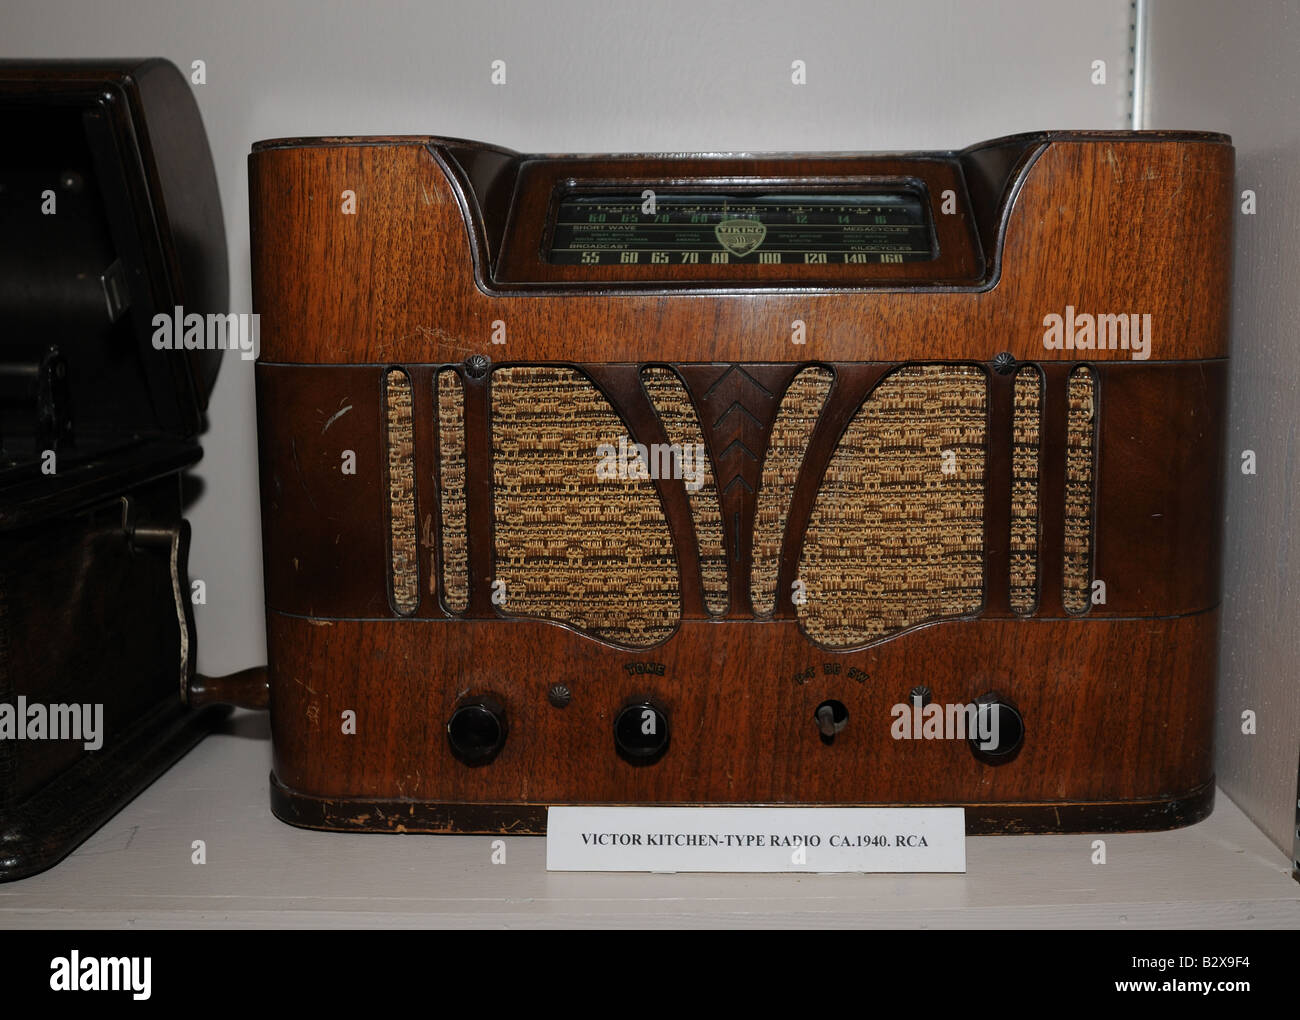 Un Viking la radio à ondes courtes à partir de 1940. Celui-ci était utilisé à Corner Brook, Terre-Neuve et s'est retrouvé dans le musée de la ville. Banque D'Images